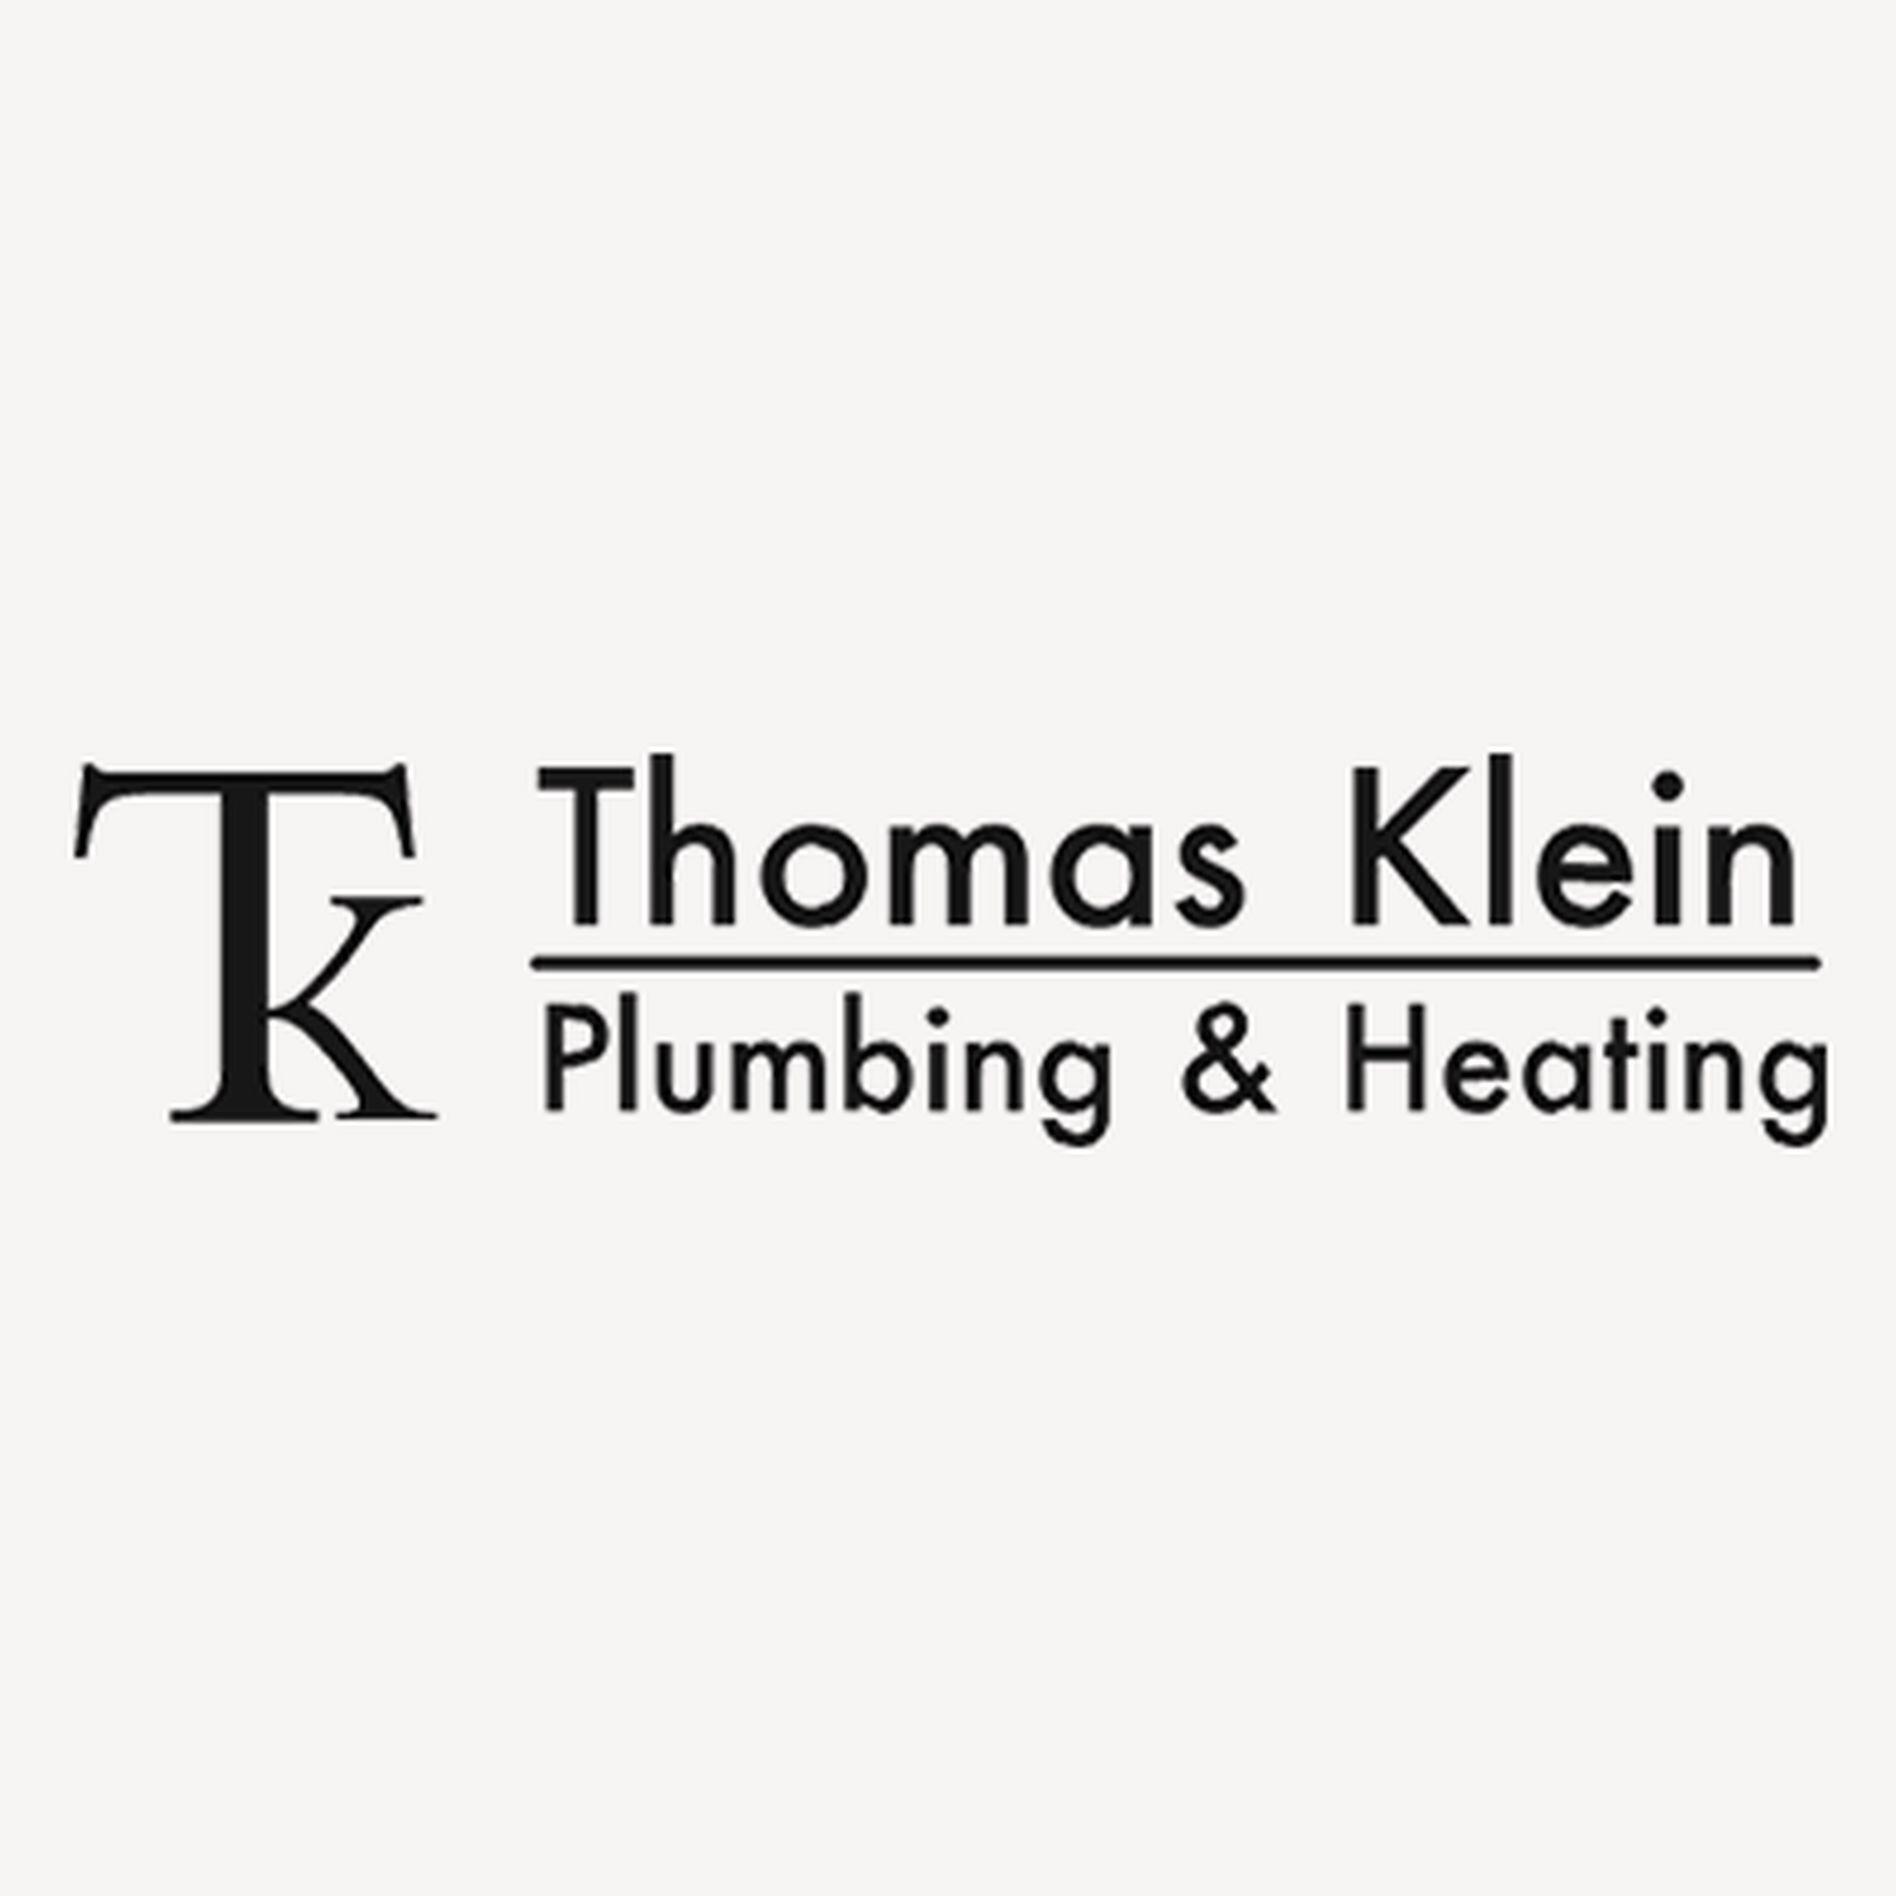 Thomas Klein Plumbing & Heating